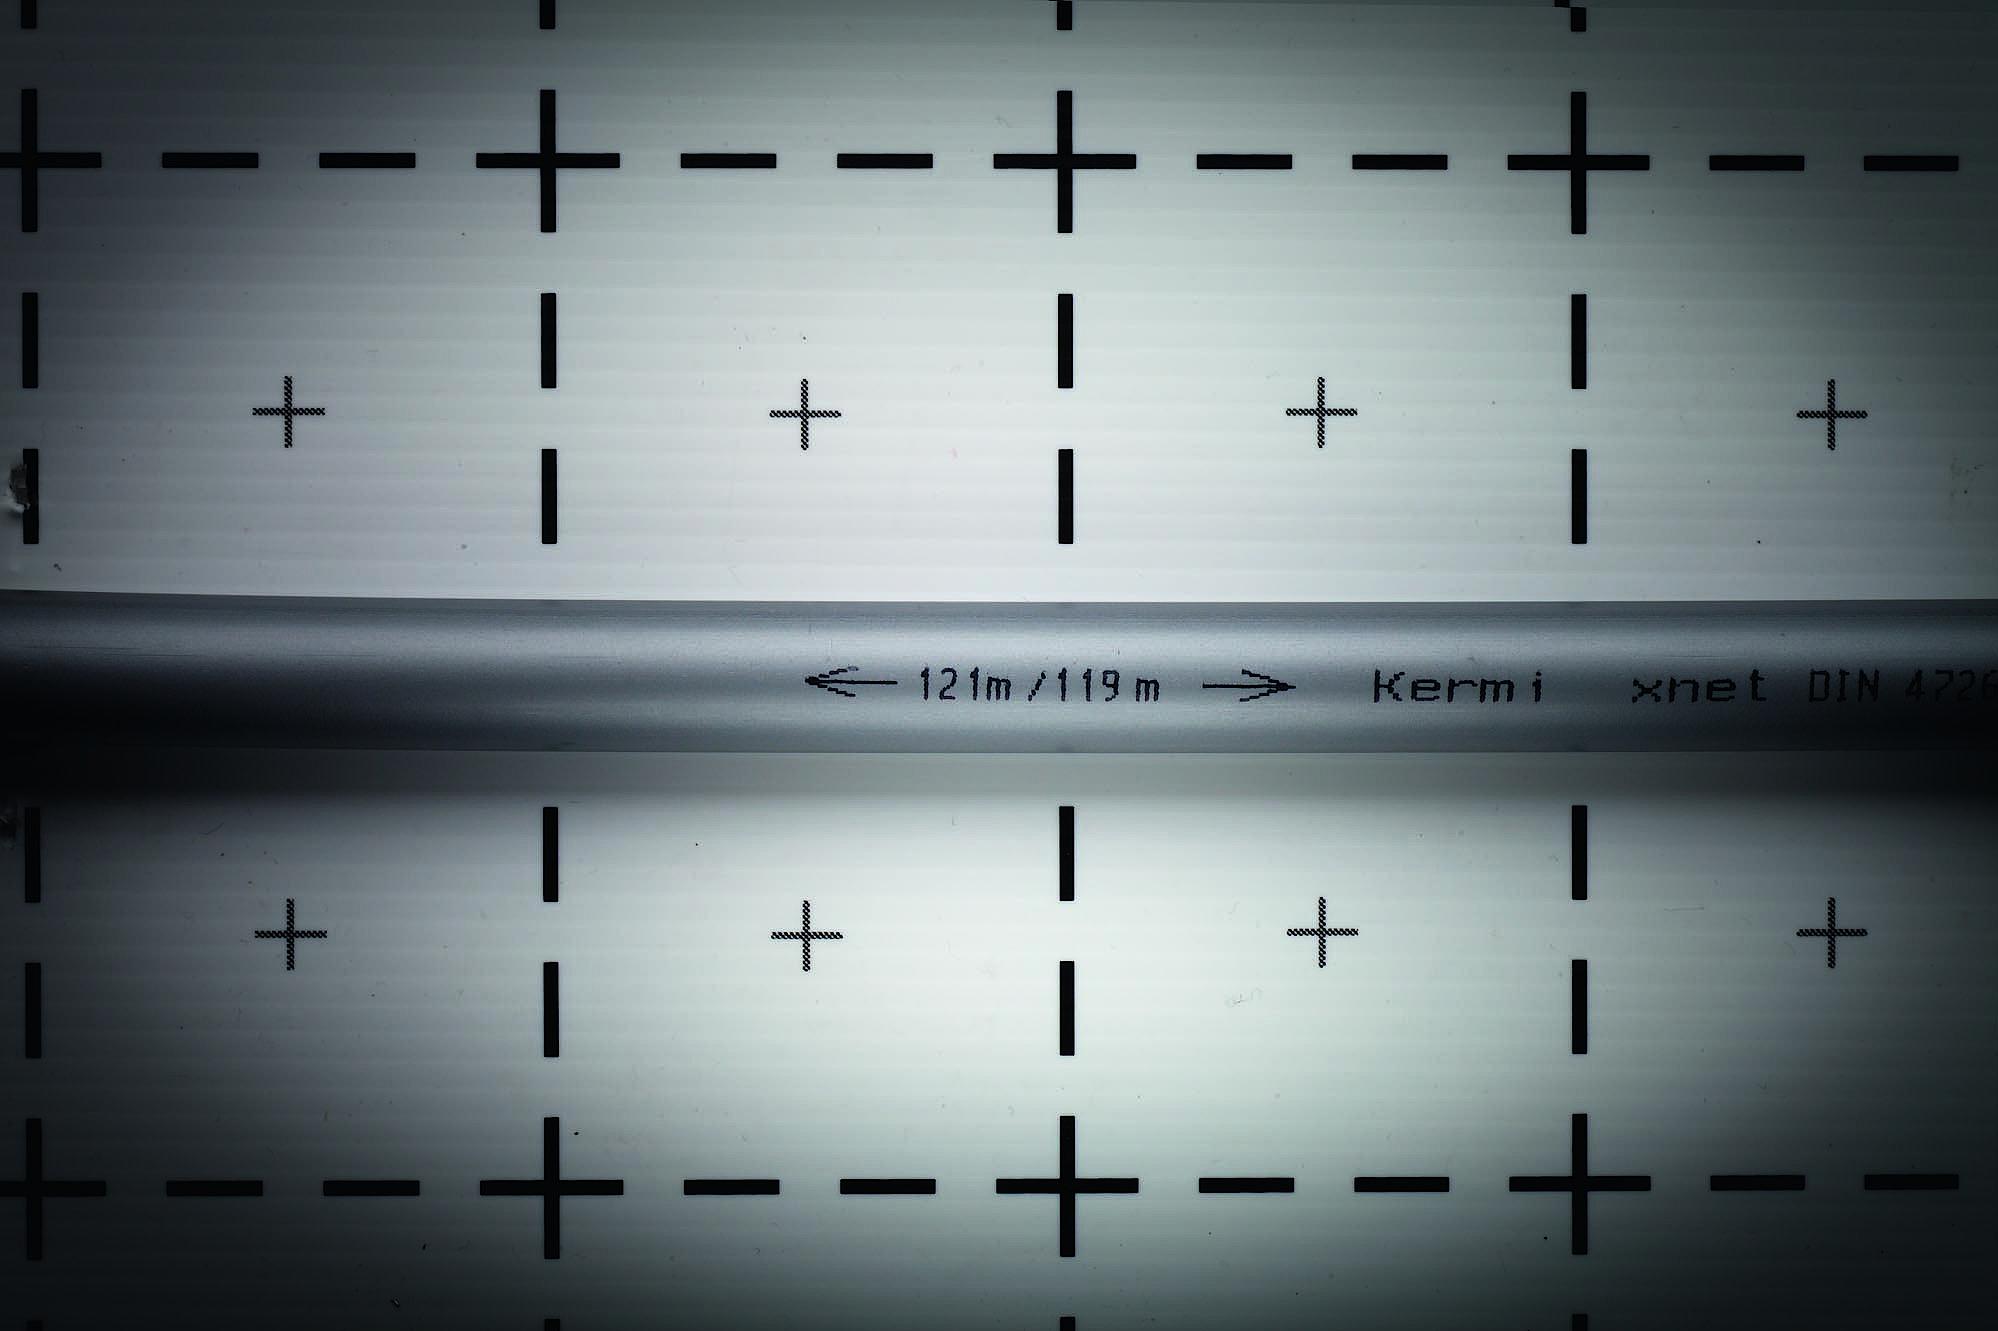 Kermi x-net a 5 strati PE-Xc marchiatura del tubo con indicazione della lunghezza restante e della quantità di tubo già utilizzata per un utilizzo ottimale dei rotoli.